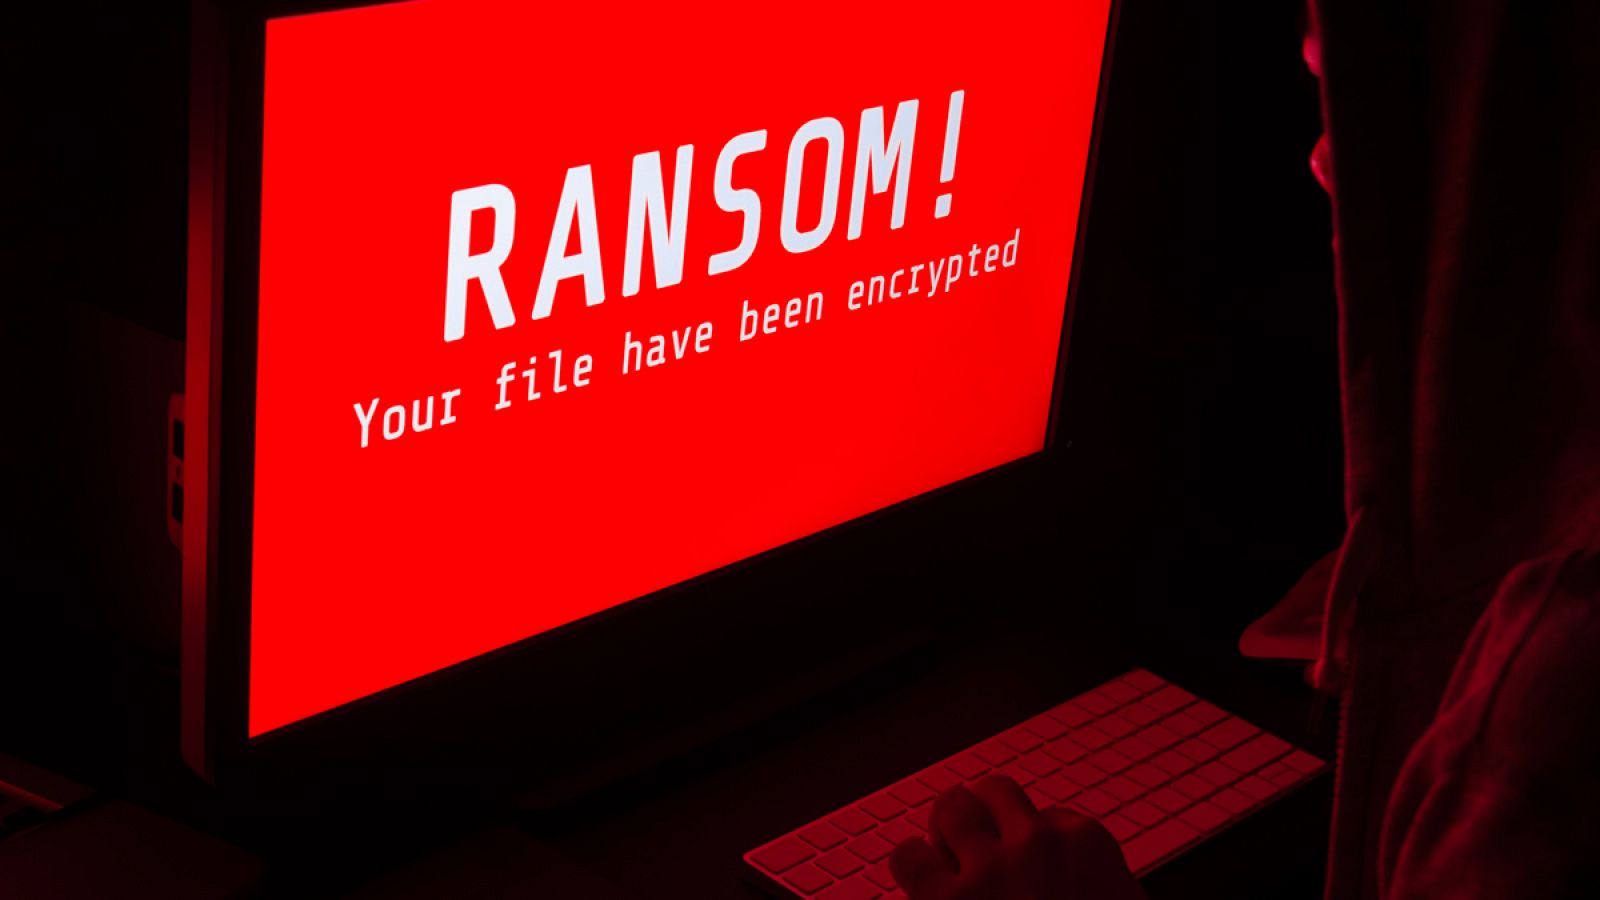 Un 'ransomware' es un virus informático que restringe el acceso a determinadas partes o archivos del sistema infectado, y pide un rescate a cambio de quitar esta restricción.